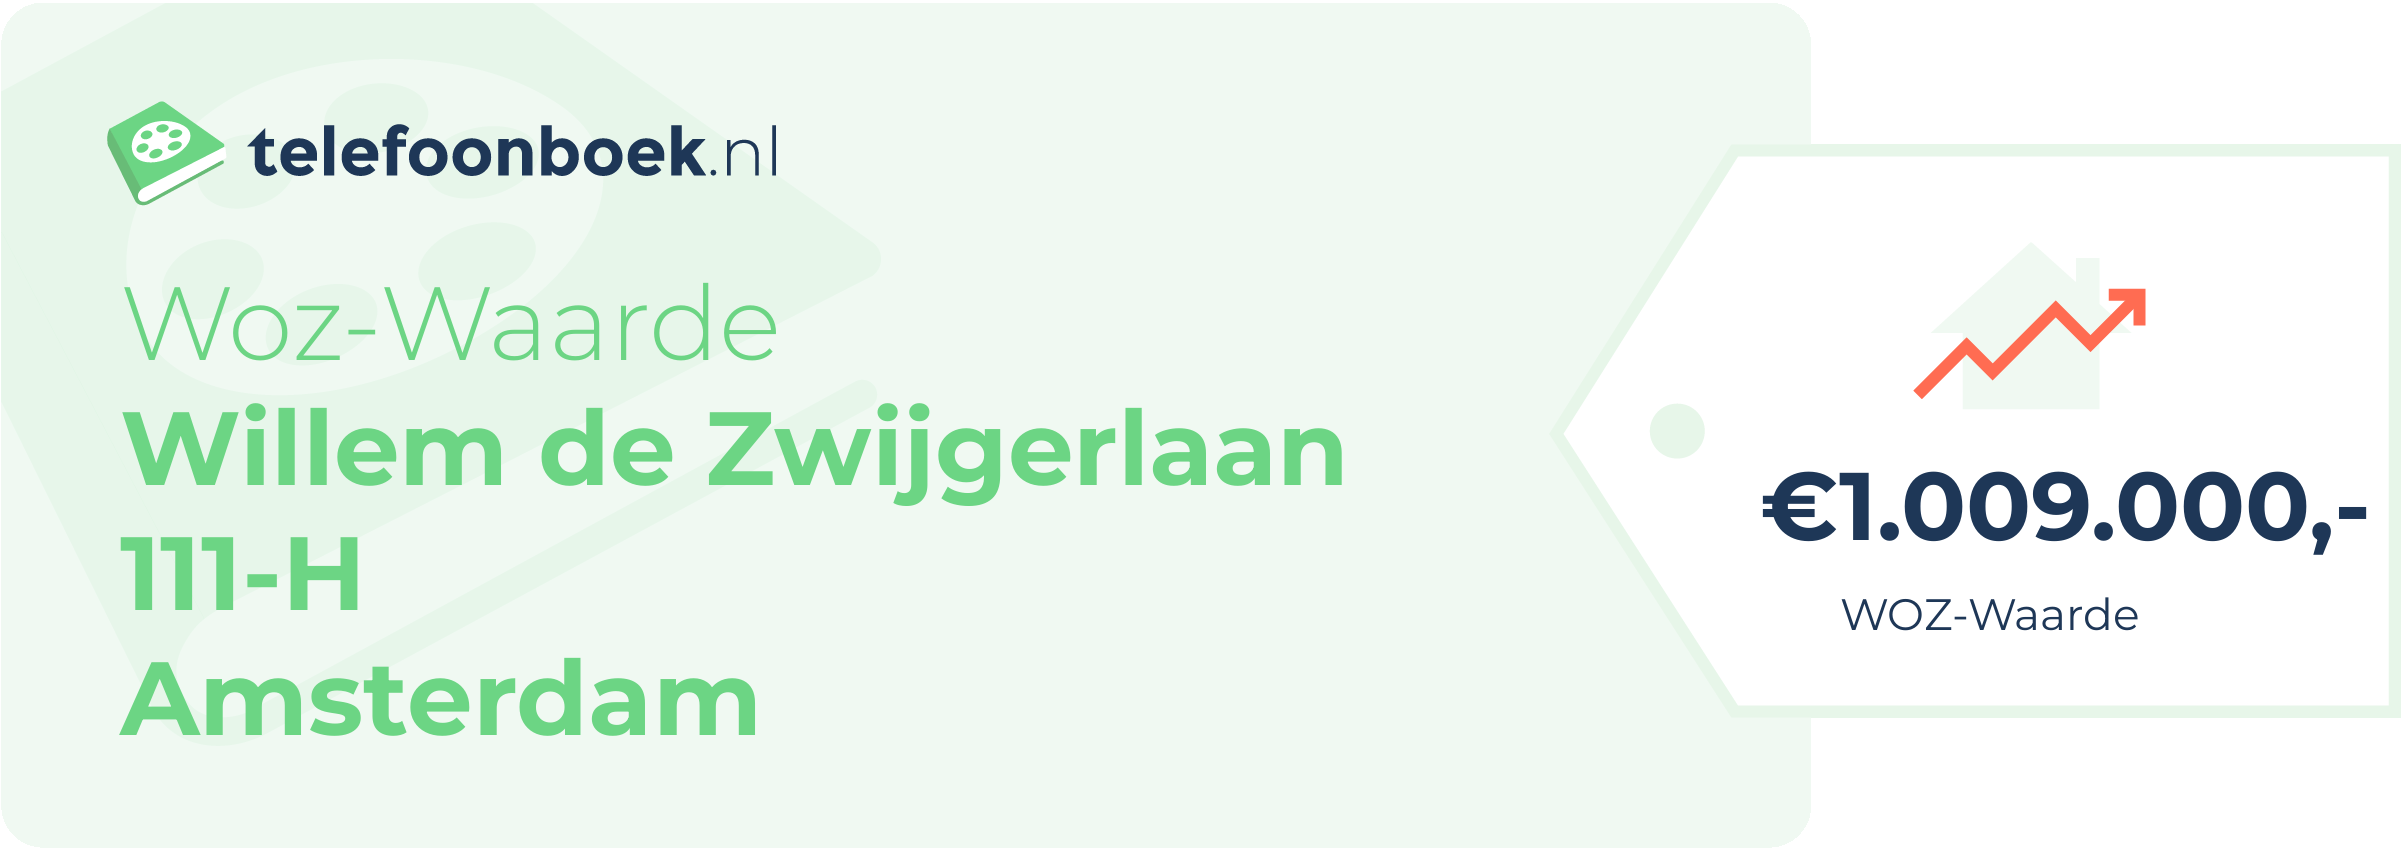 WOZ-waarde Willem De Zwijgerlaan 111-H Amsterdam